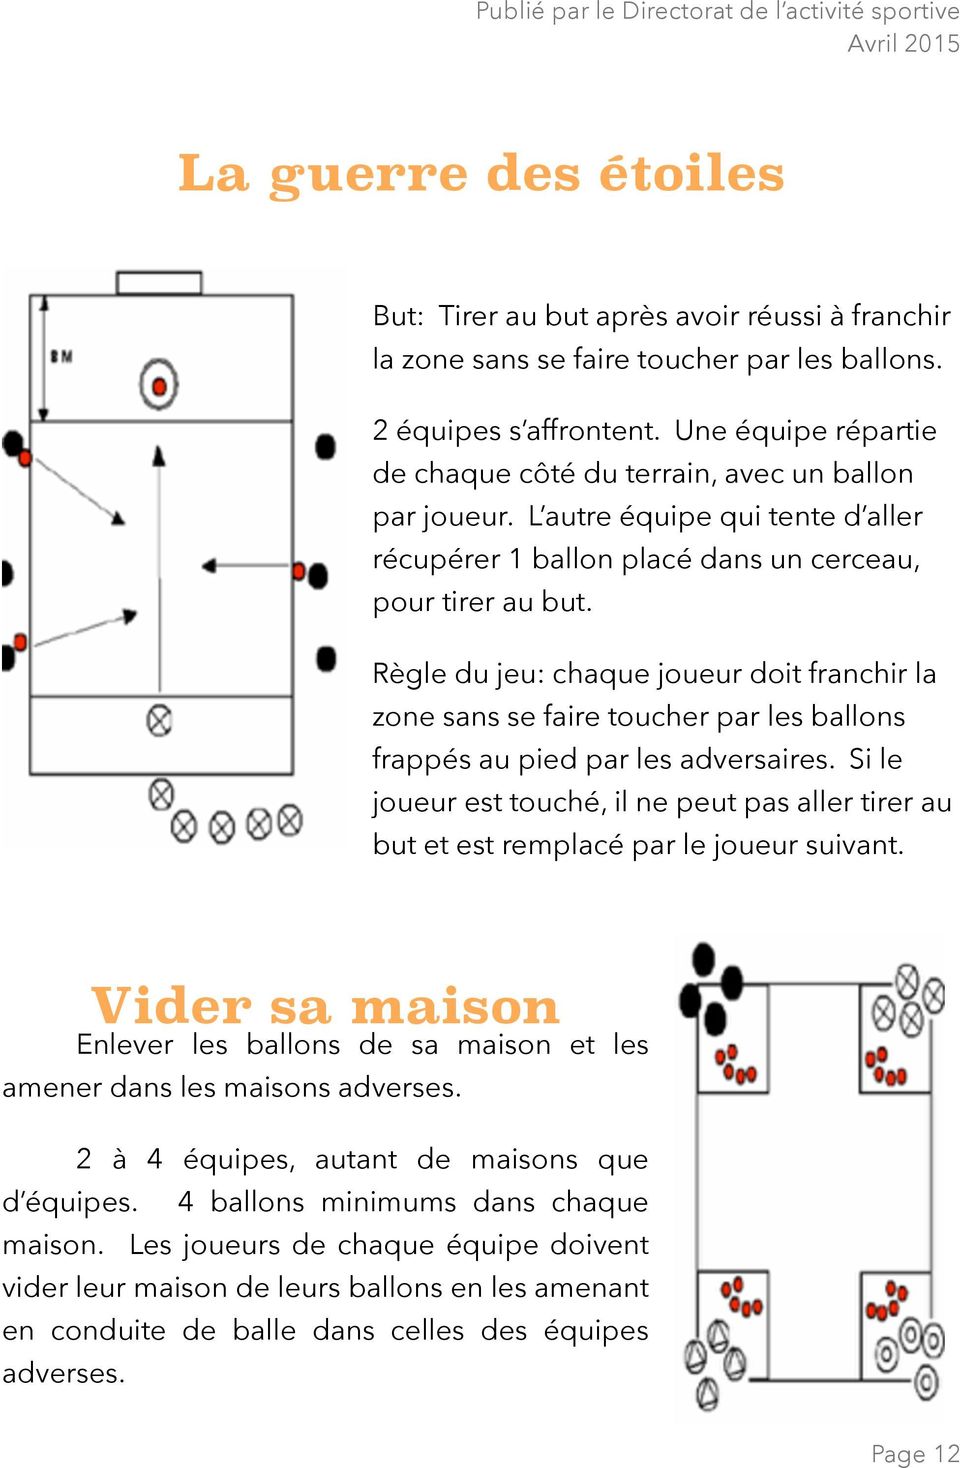 Règle du jeu: chaque joueur doit franchir la zone sans se faire toucher par les ballons frappés au pied par les adversaires.